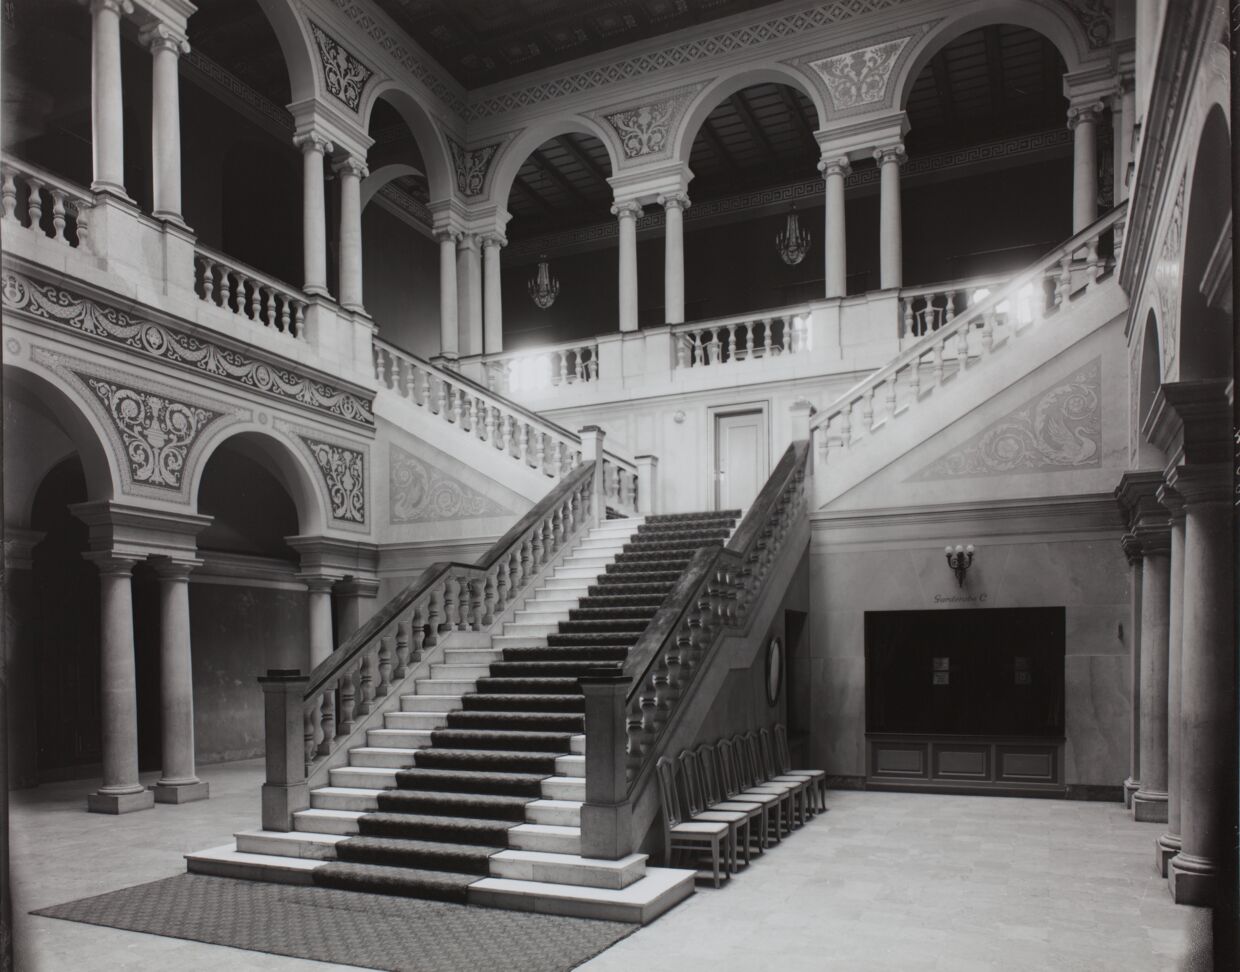 Den nuværende Palads-bygning stod færdig som biograf i 1918 og er tegnet af arkitekterne Andreas Clemmesen og Johan Nielsen, som opførte den i nybarok stil. Foyeren er centret omkring den imponerende trappe i italiensk renæssancestil. Billedet her er fra ca. 1919.